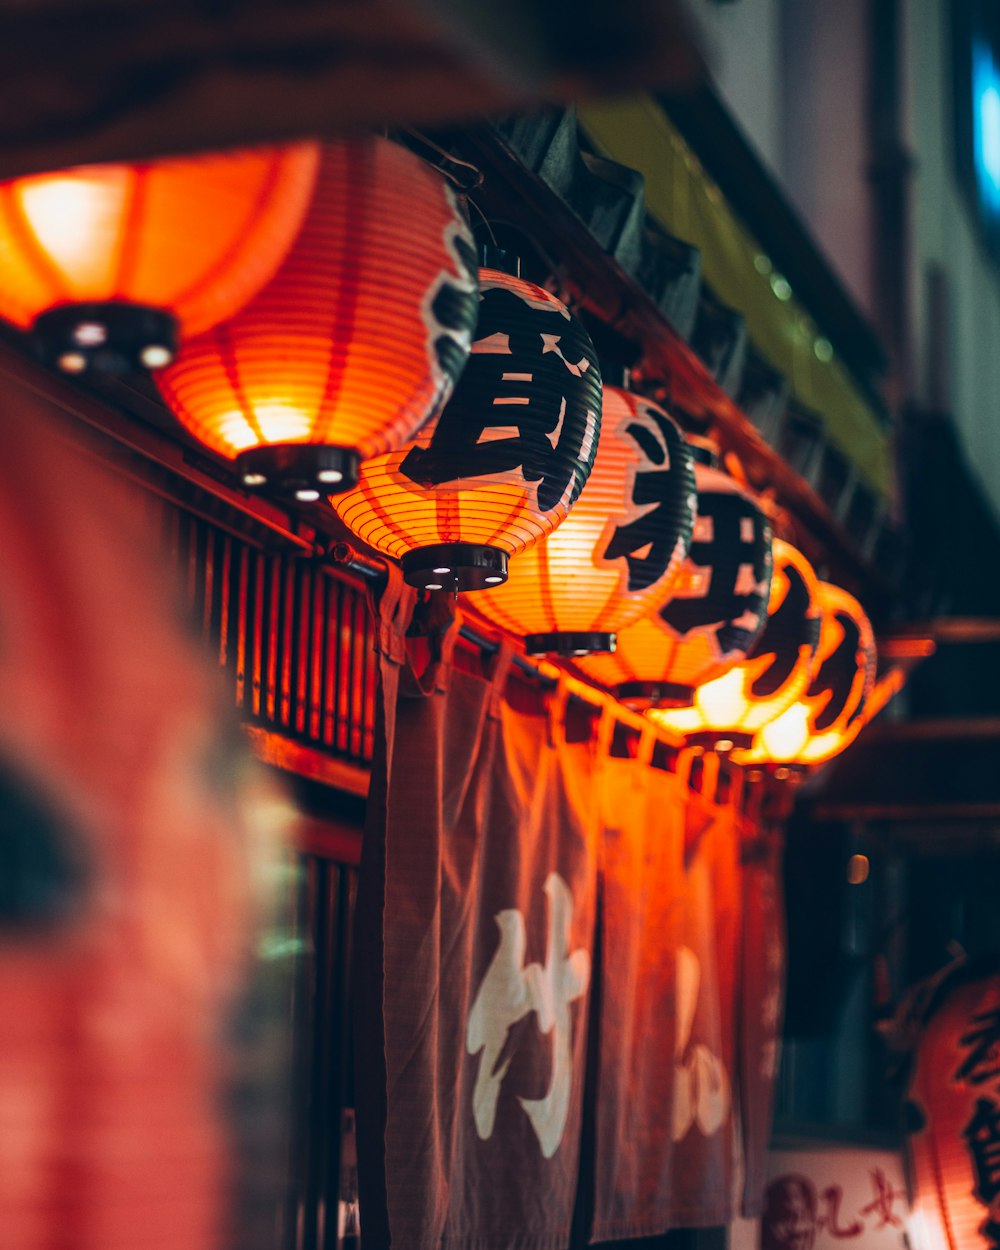 photographie sélective de lanternes chinoises rouges et noires